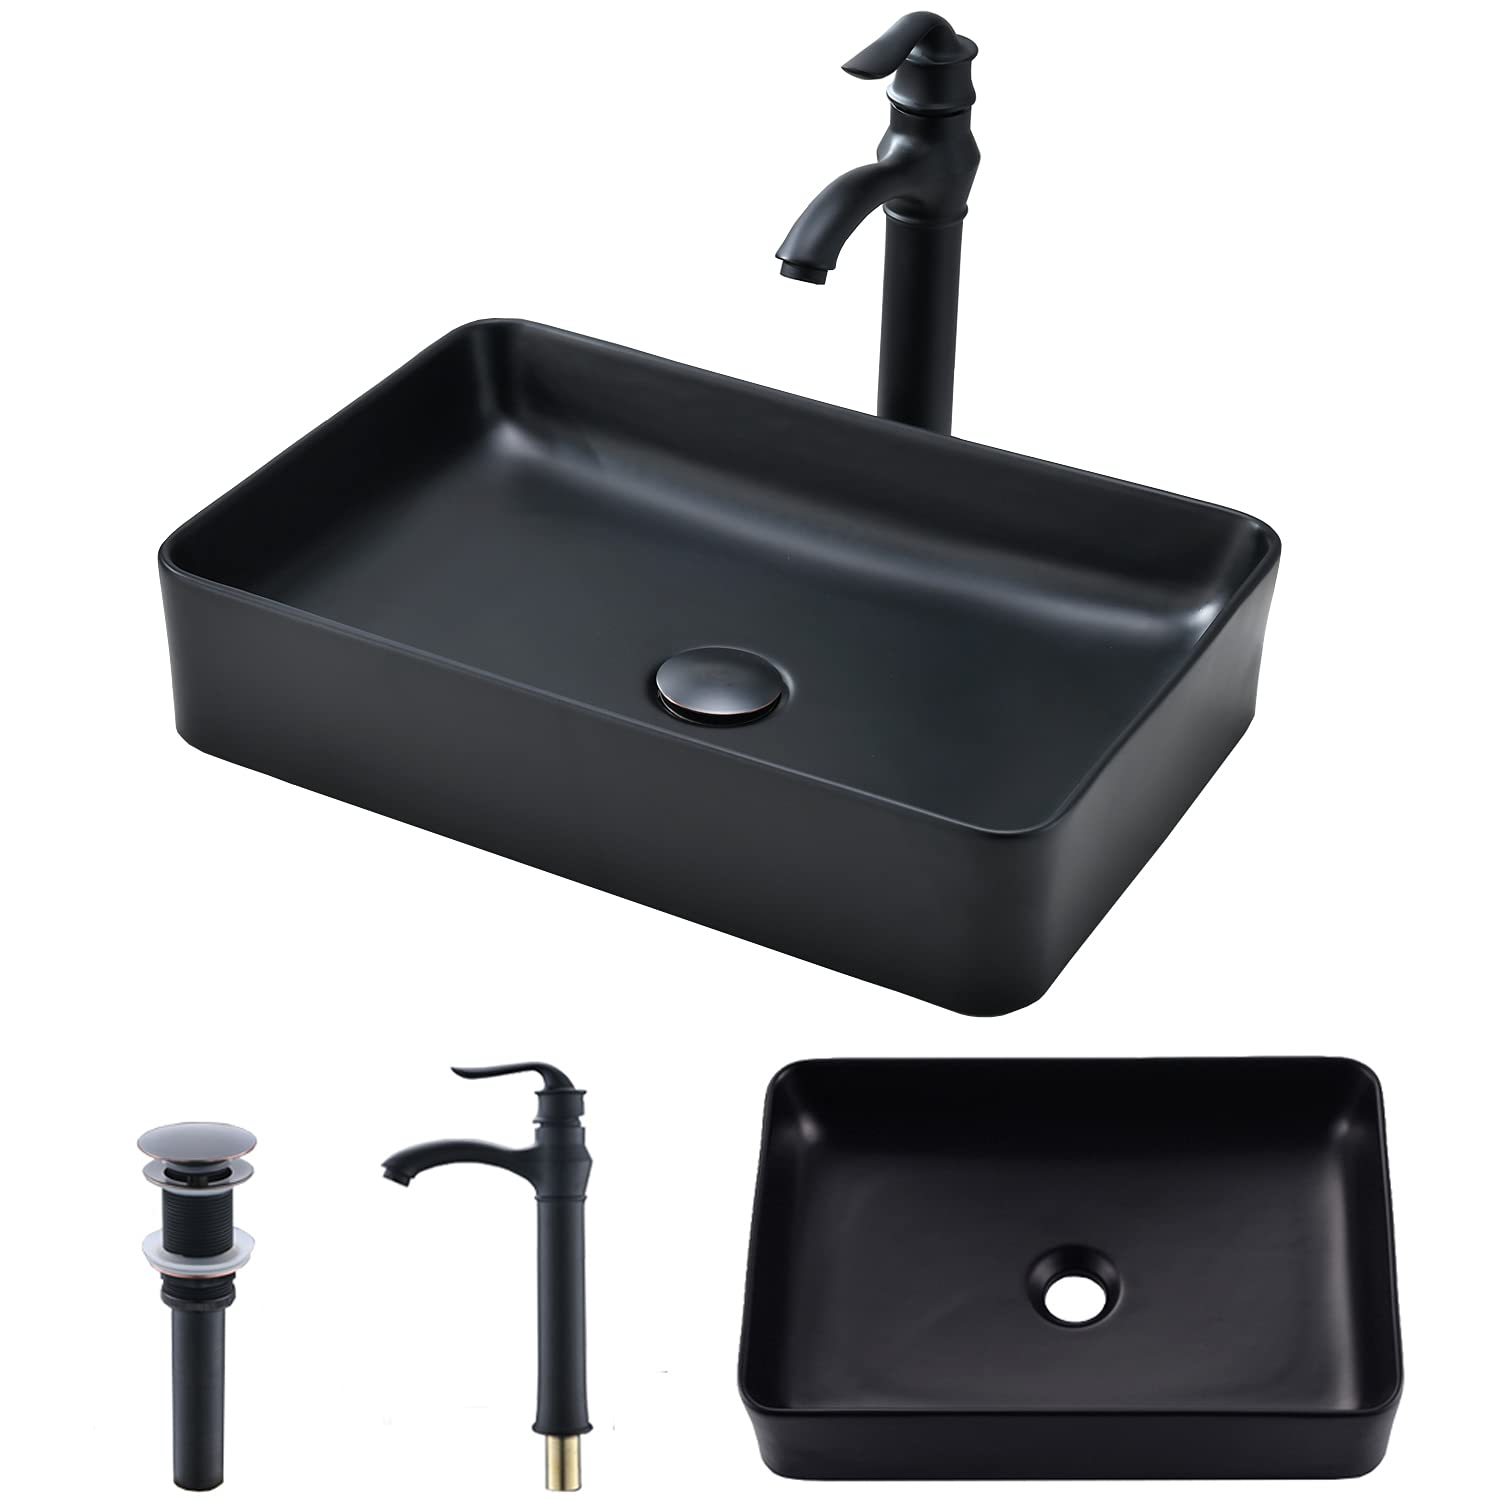 black Bathroom Vessel Sink and Faucet Combo -VOKIM 20"x14" Modern Rectangle Above Counter black Porcelain Ceramic Vessel Vanity Sink Art Ba...